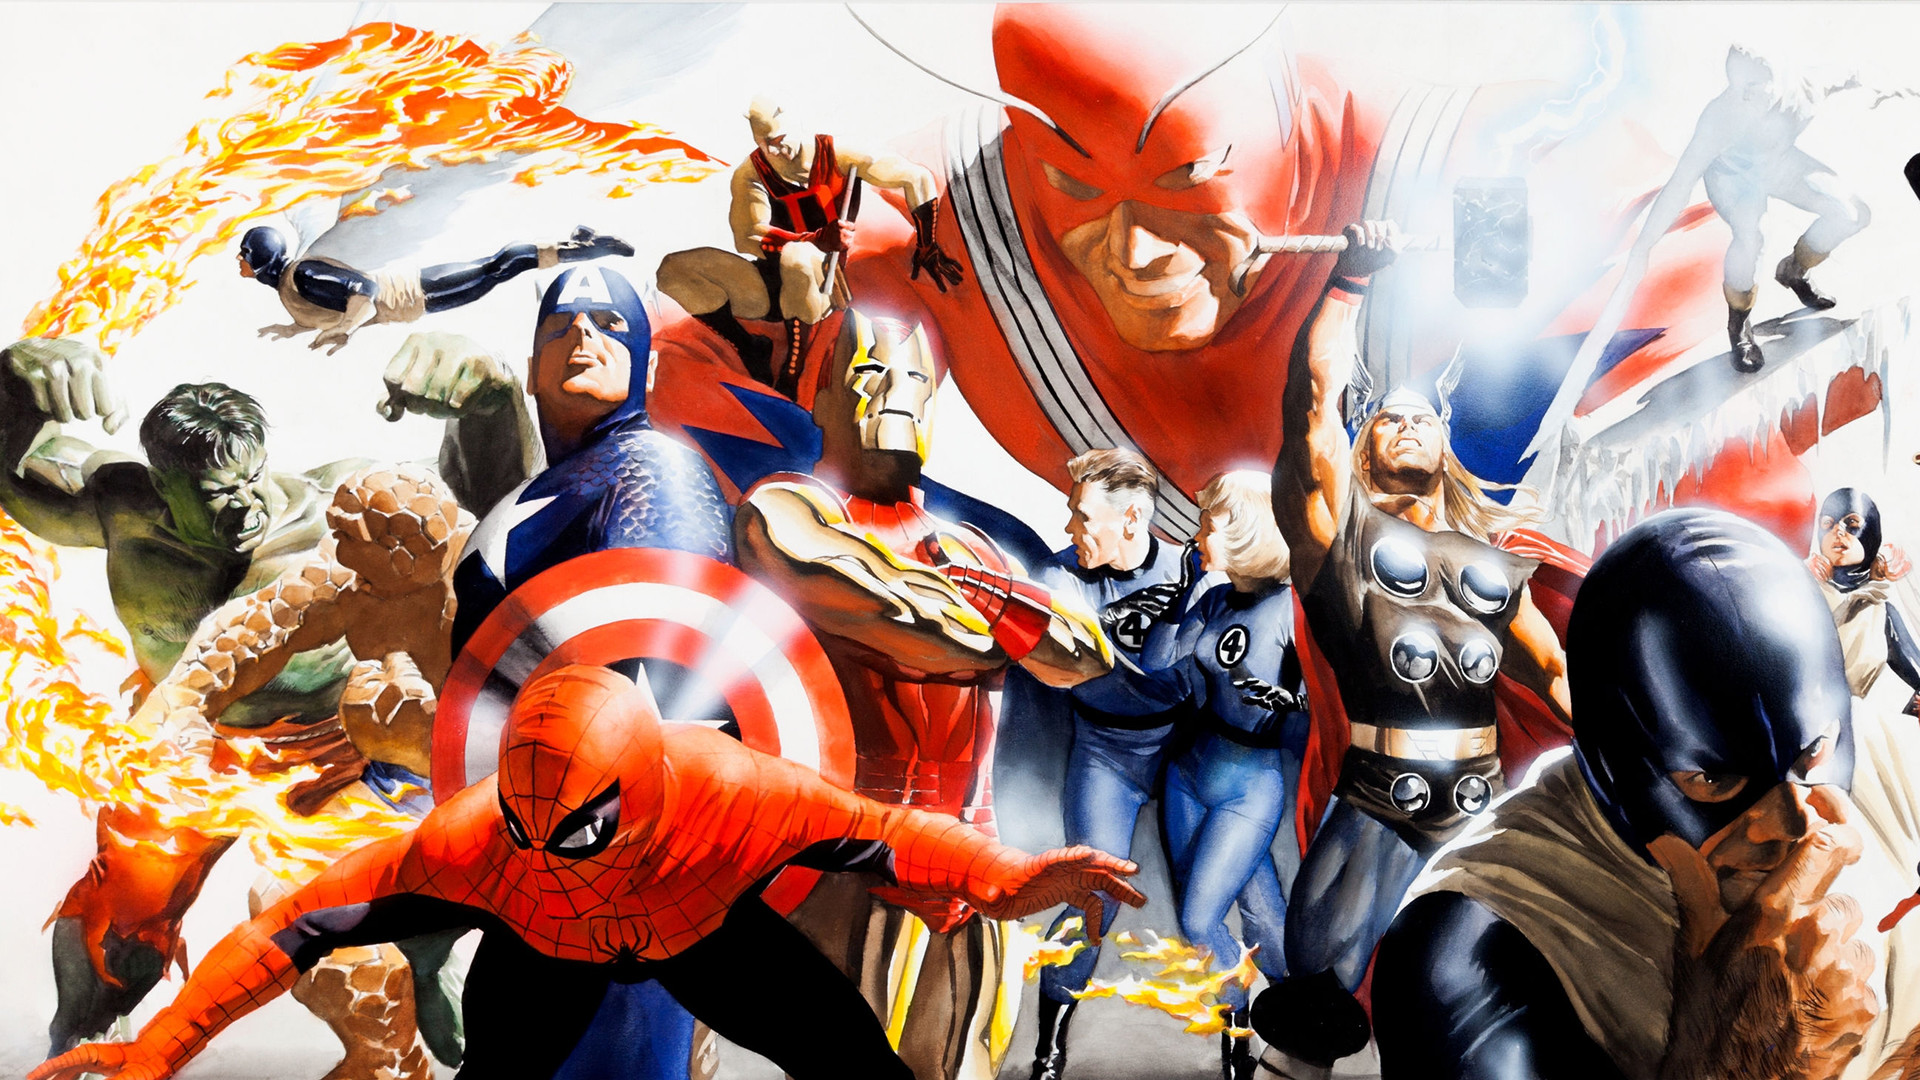 fond d'écran de super héros marvel,héros,personnage fictif,super héros,fiction,anime